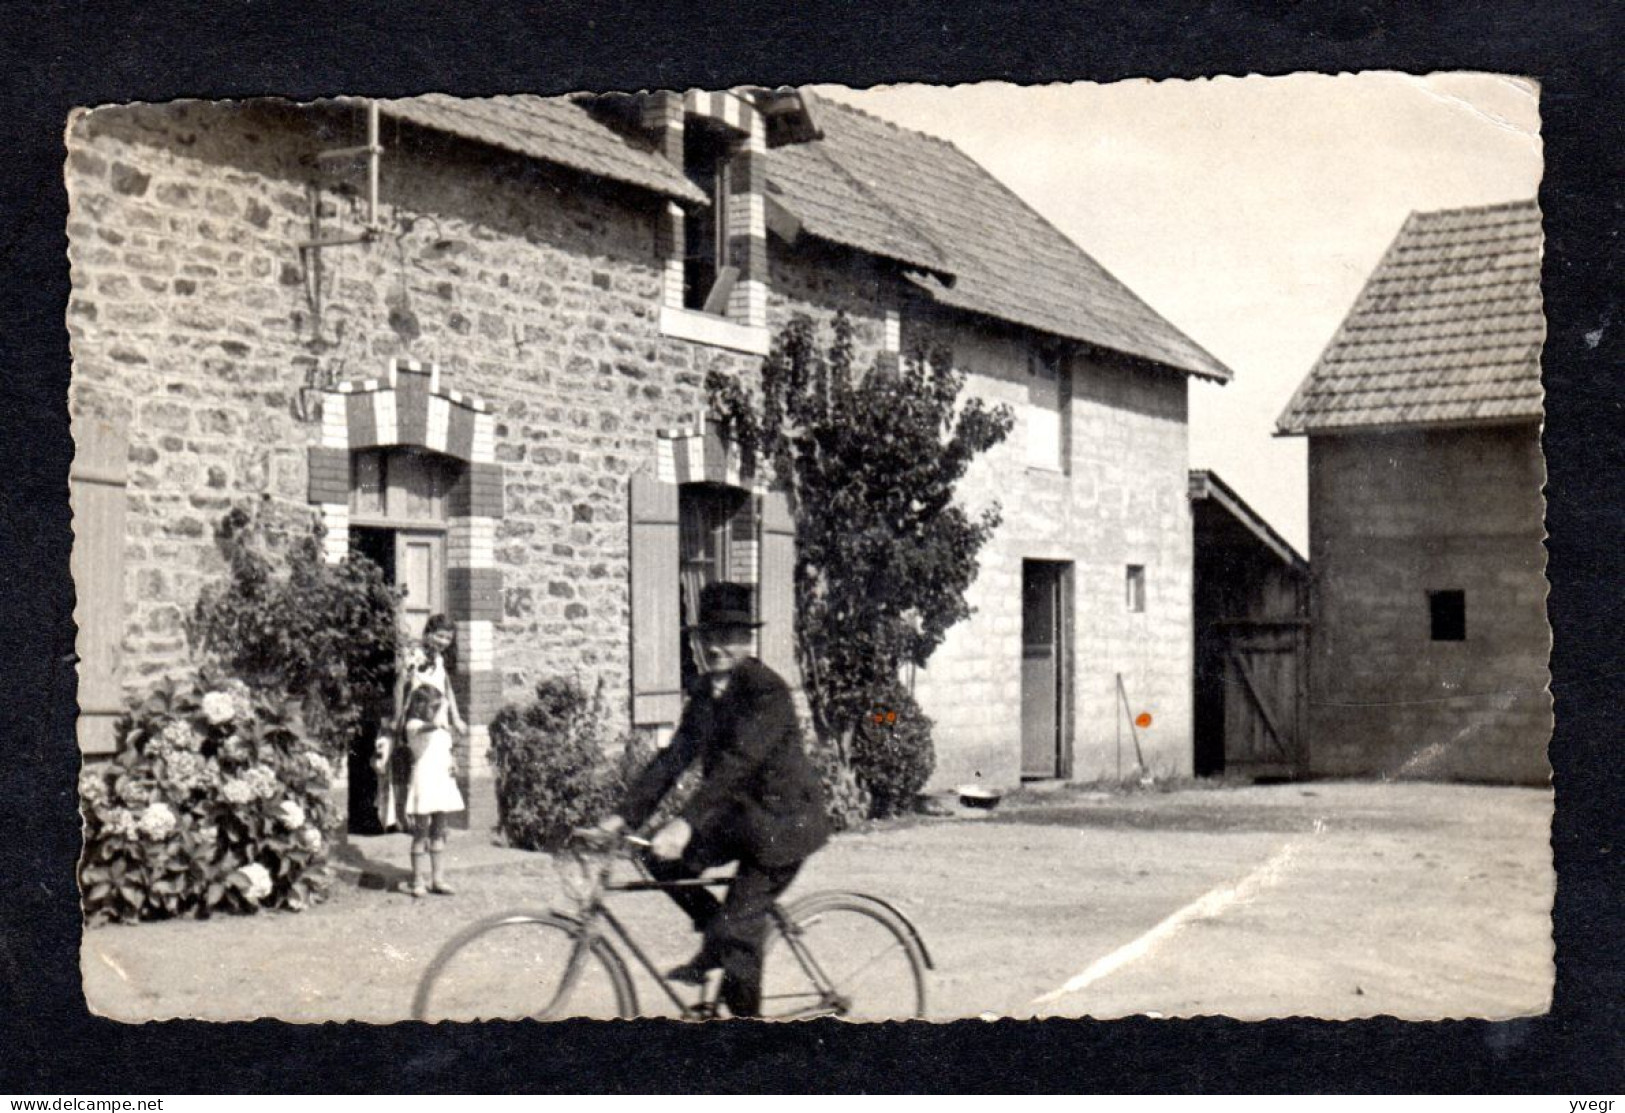 Carte Photo à Identifier D'une Cour De Ferme, Un Homme Sur Son Vélo En Tenue De Dimanche (Environ Dinard Ou Pleurtuit ?) - Genealogy